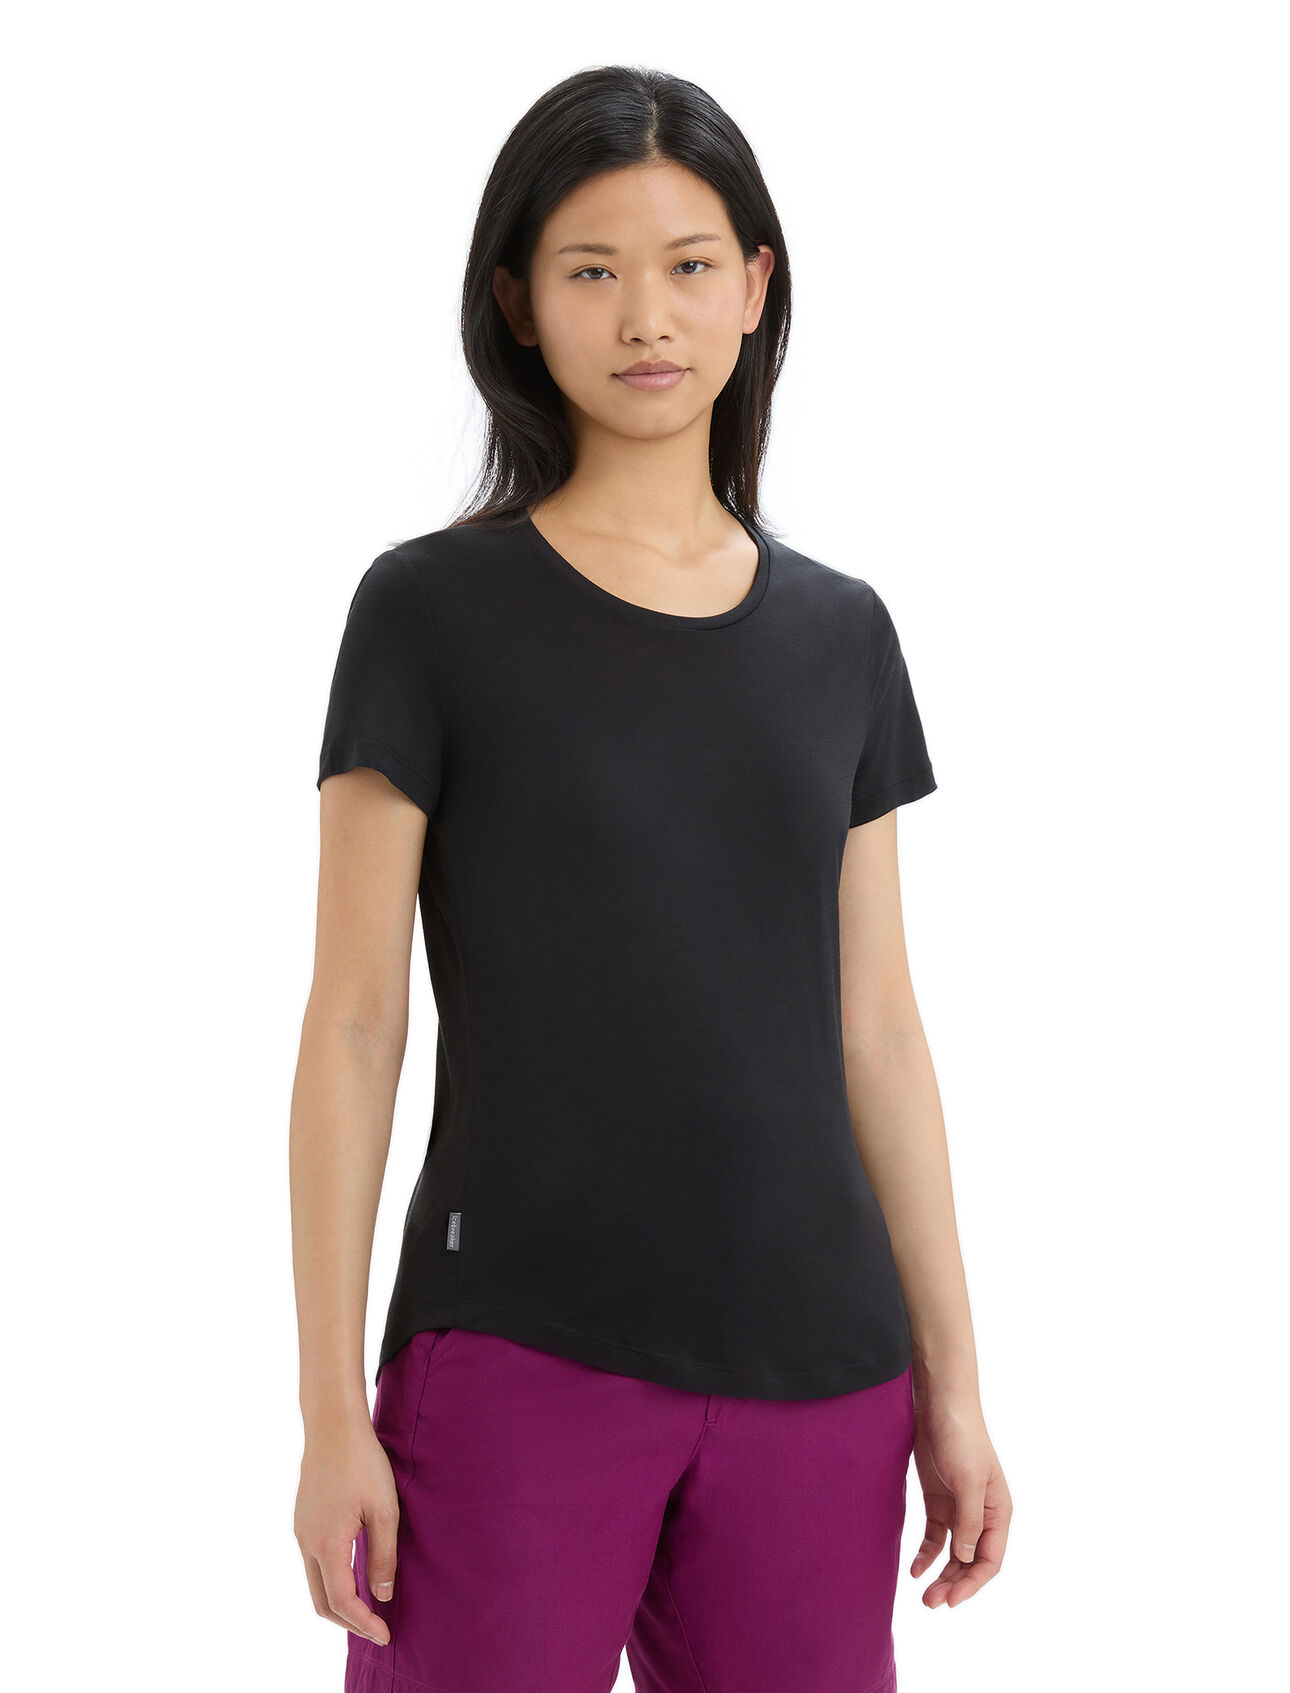 Merino Sphere II T-Shirt Damen Ein weiches Merinomix T-Shirt aus unserem leichtgewichtigen Cool-Lite™ Jersey, das kurzärmlige Sphere II T-Shirt bietet natürliche Atmungsaktivität, Geruchshemmung und Komfort. 